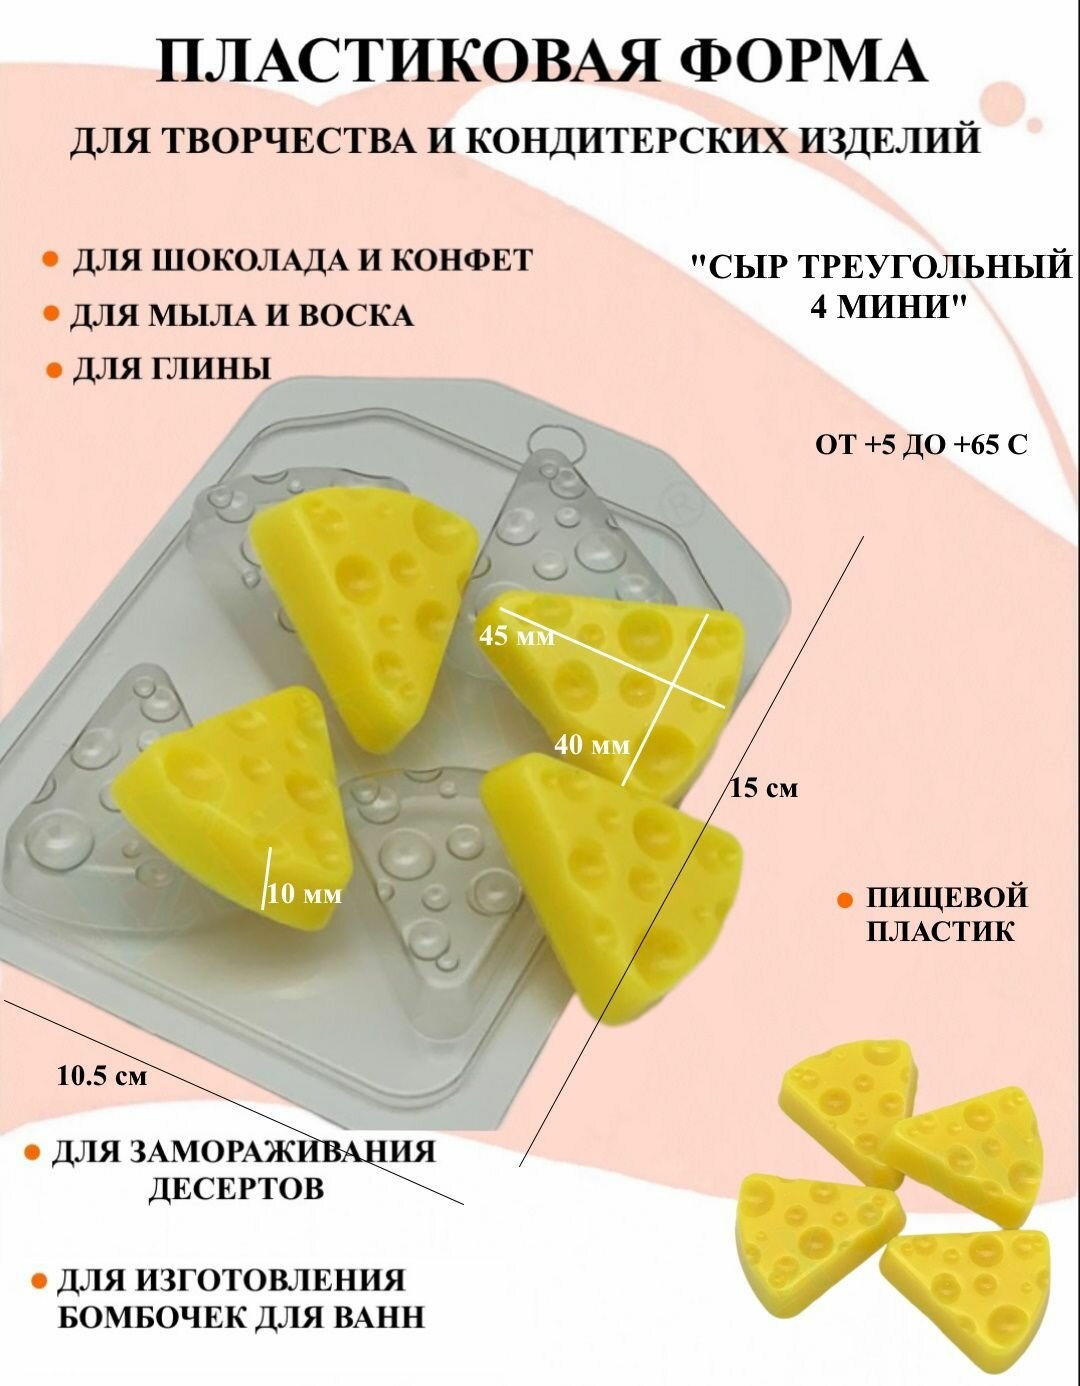 Пластиковая форма Сыр Треугольный 4 мини Б1627, для творчества, для шоколада и желе, молд, для свечей, для мыла, для льда, форма для десертов, для мыла и глины